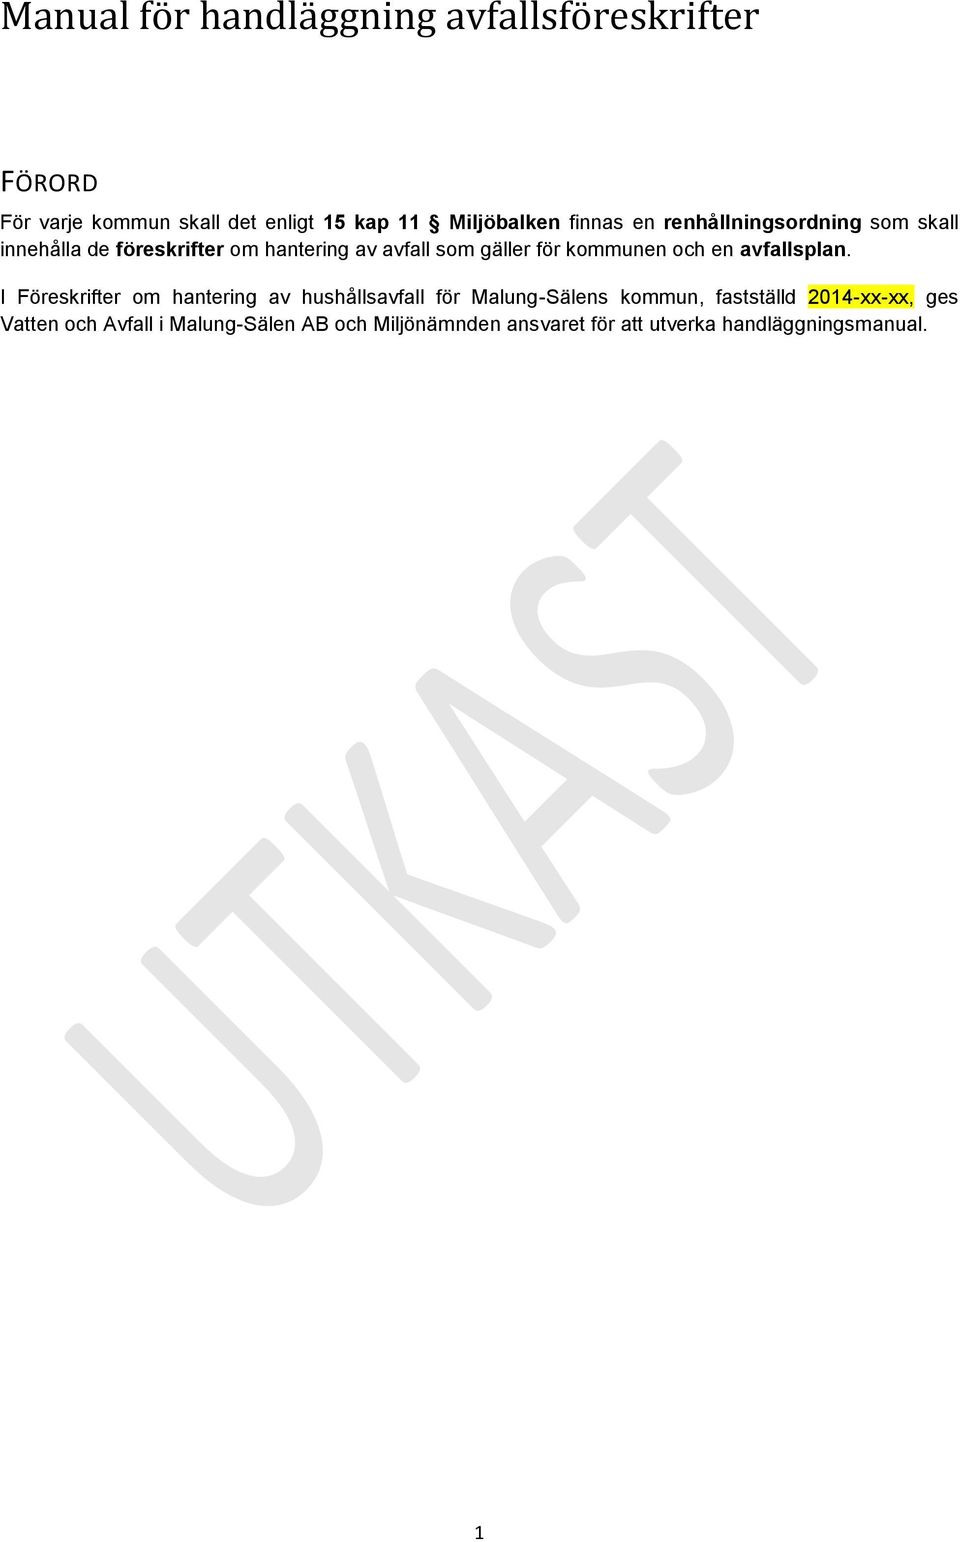 I Föreskrifter om hantering av hushållsavfall för Malung-Sälens kommun, fastställd 2014-xx-xx, ges